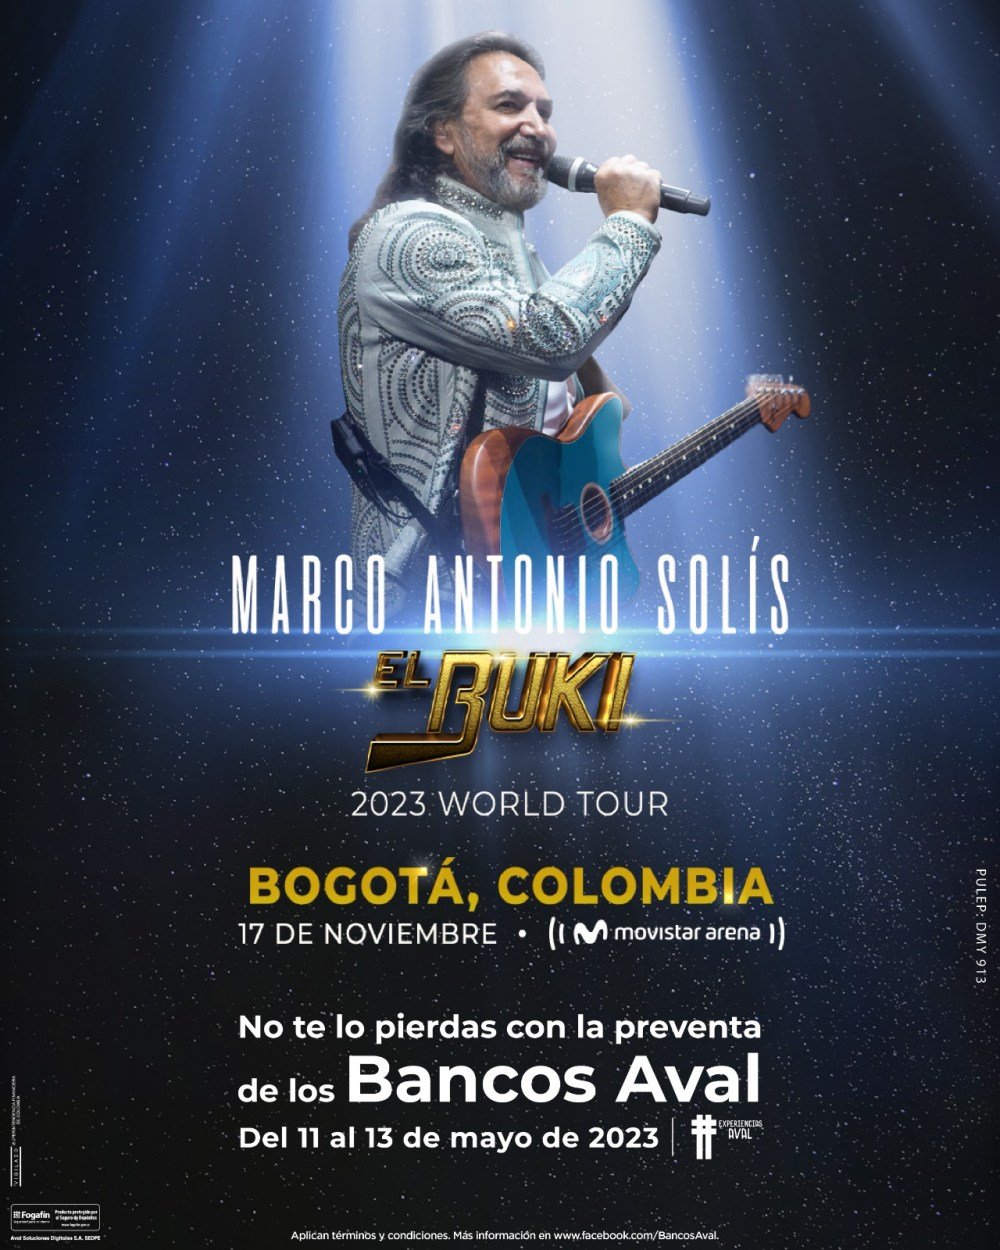 El Buki Tour 2023 nueva gira de Marco Antonio Solís en el Movistar